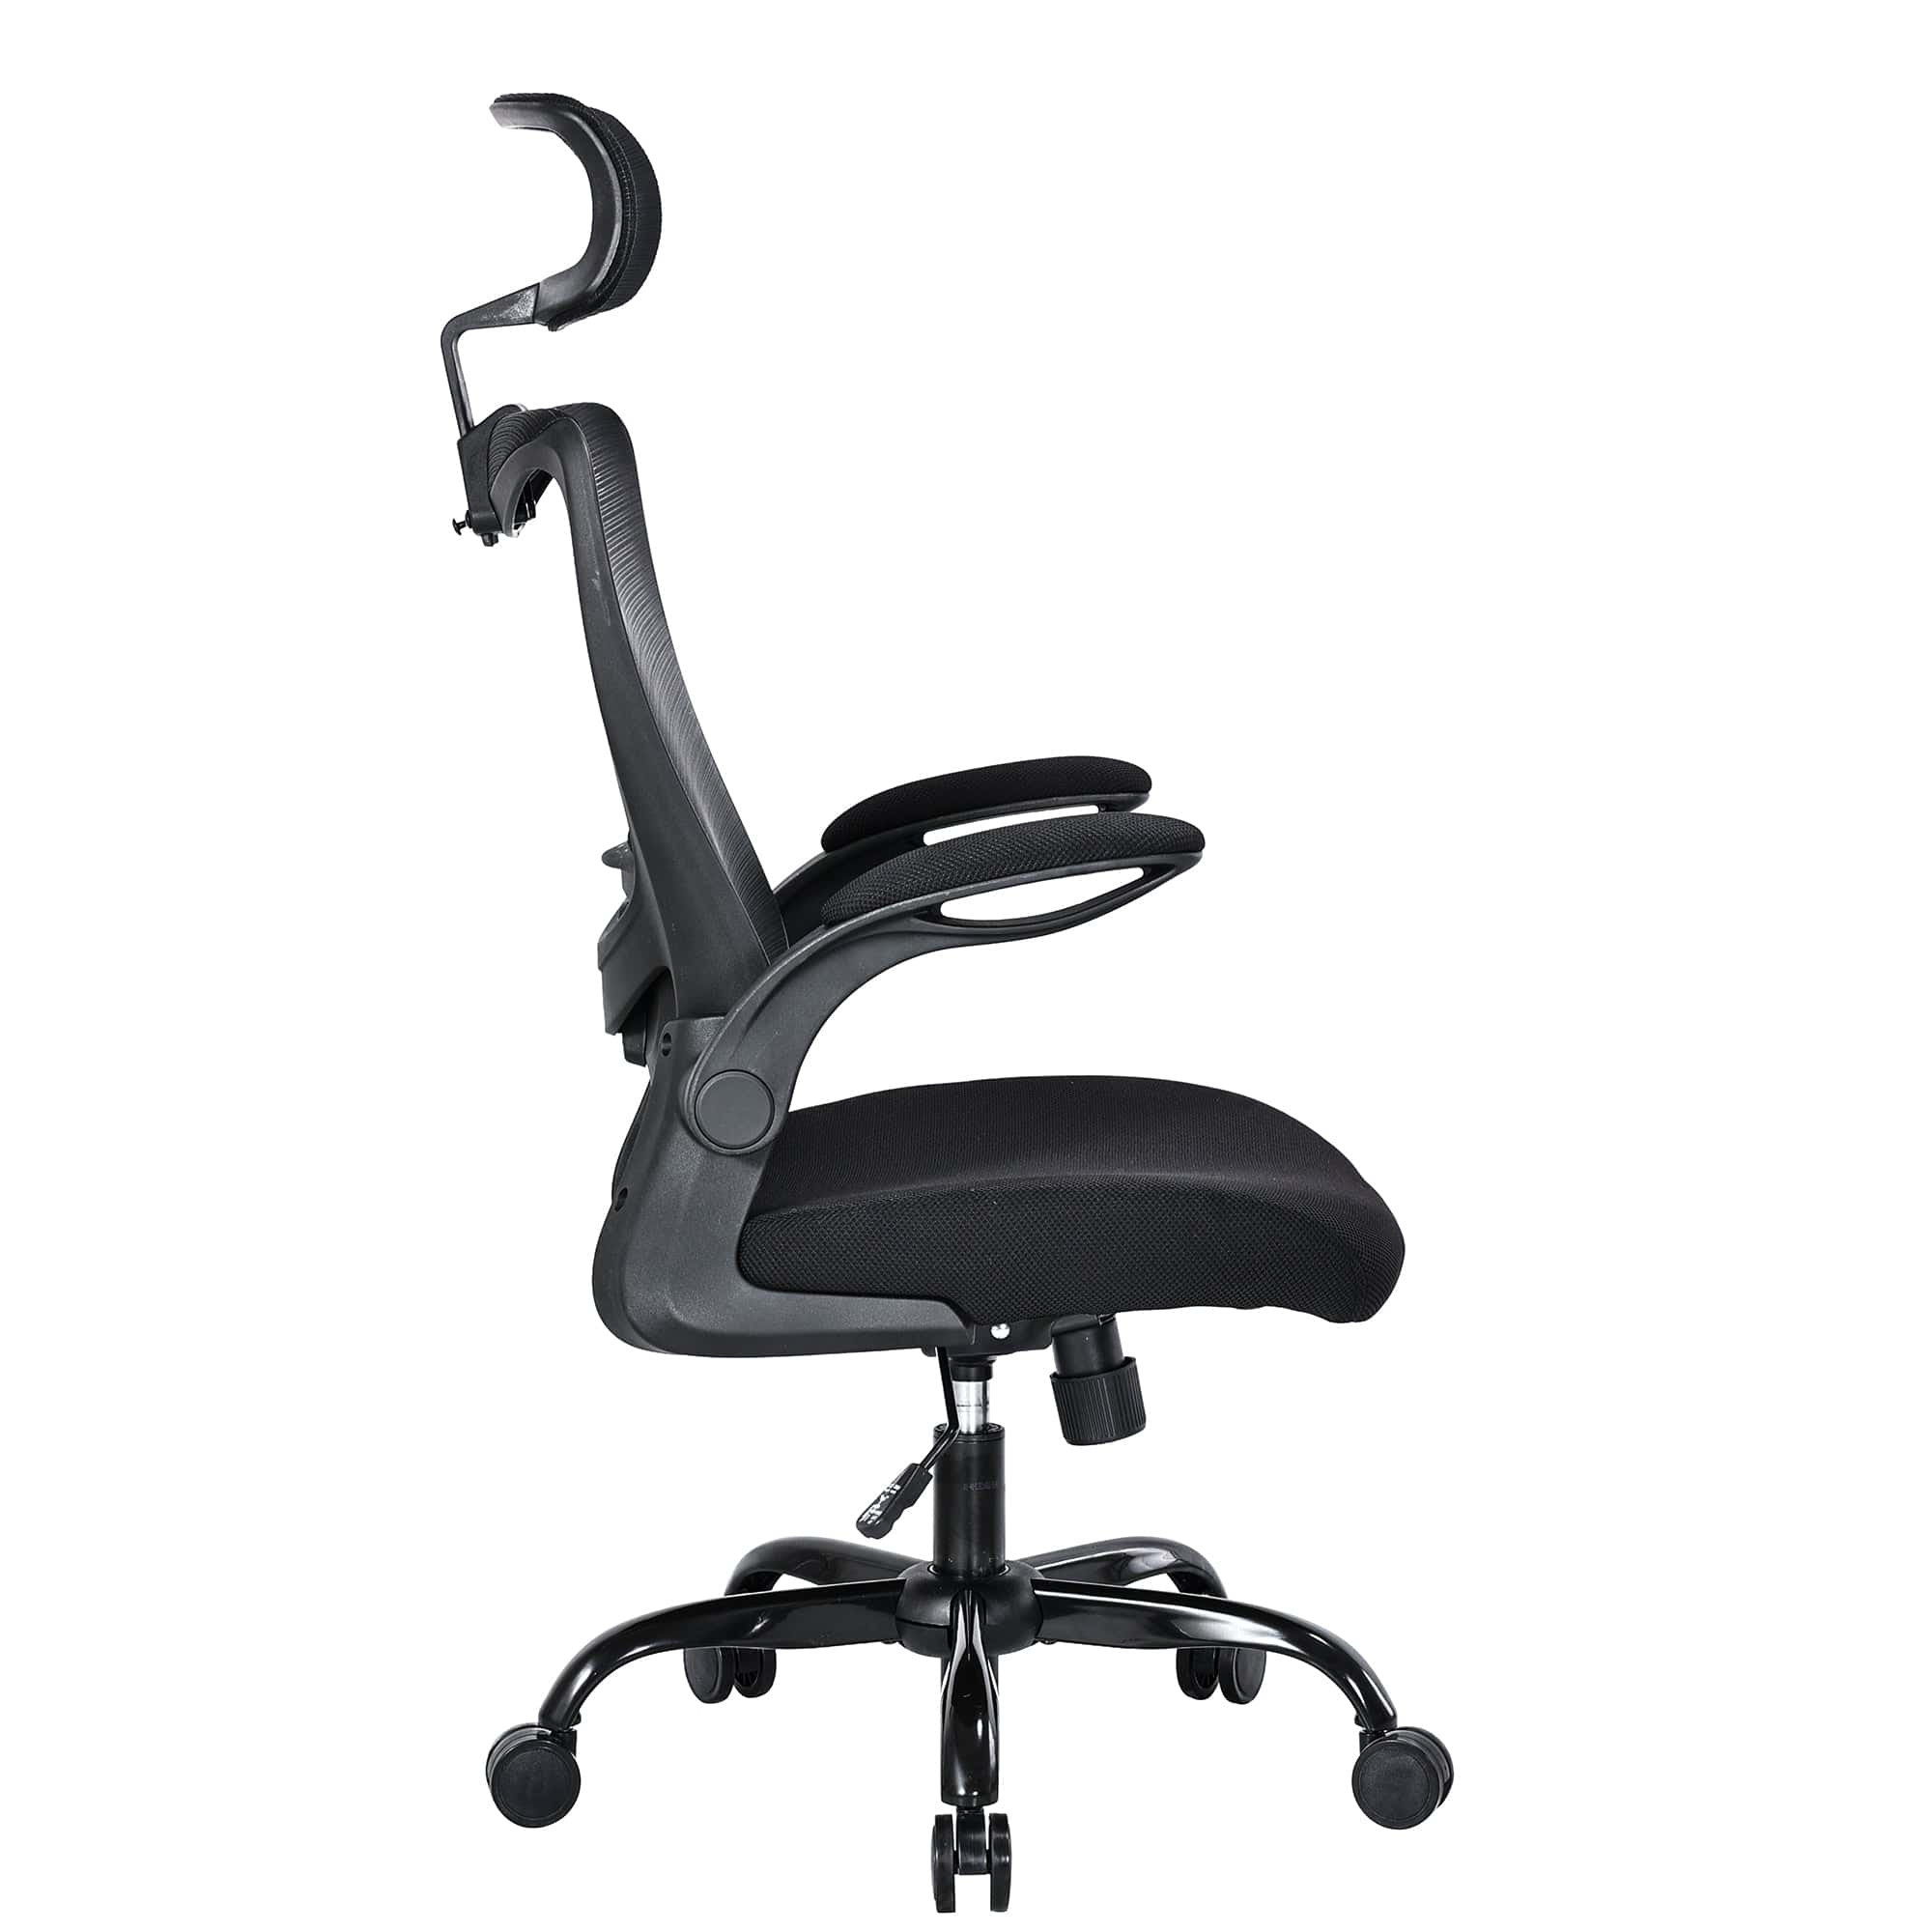 MONA Ergonomic High Back Flipped Armrest Task Chair In Grey/Black